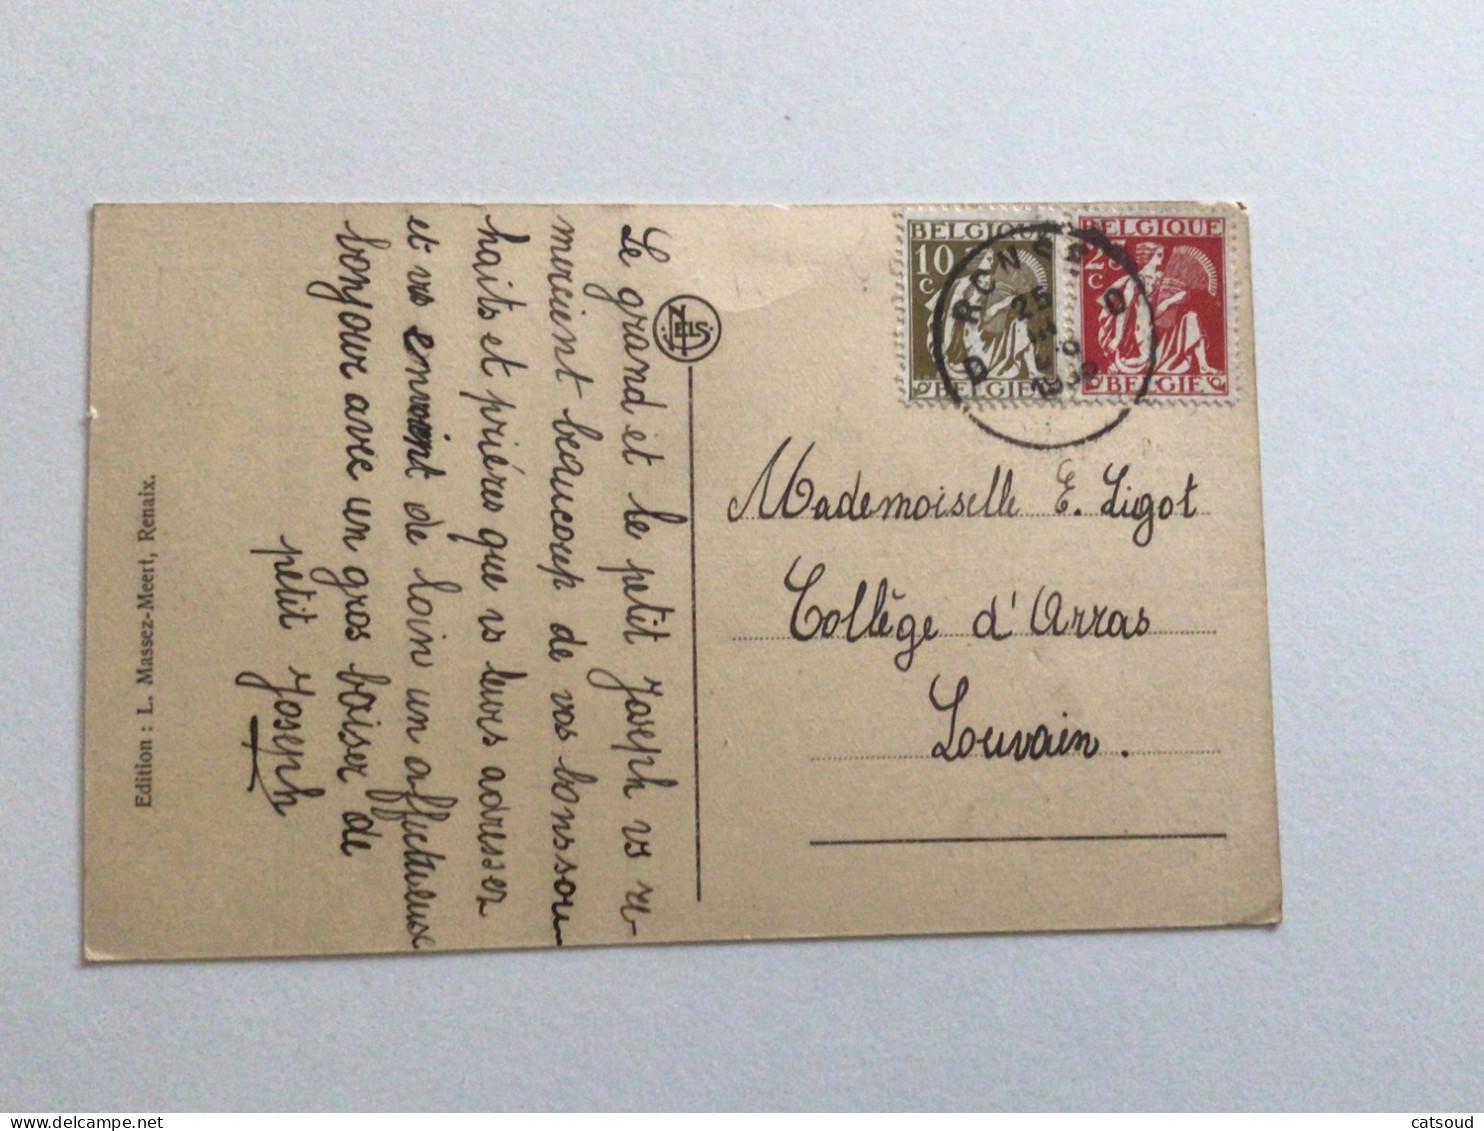 Carte Postale Ancienne (1933) Renaix Montagne De La Cruche Le Château De M. Malander - Renaix - Ronse